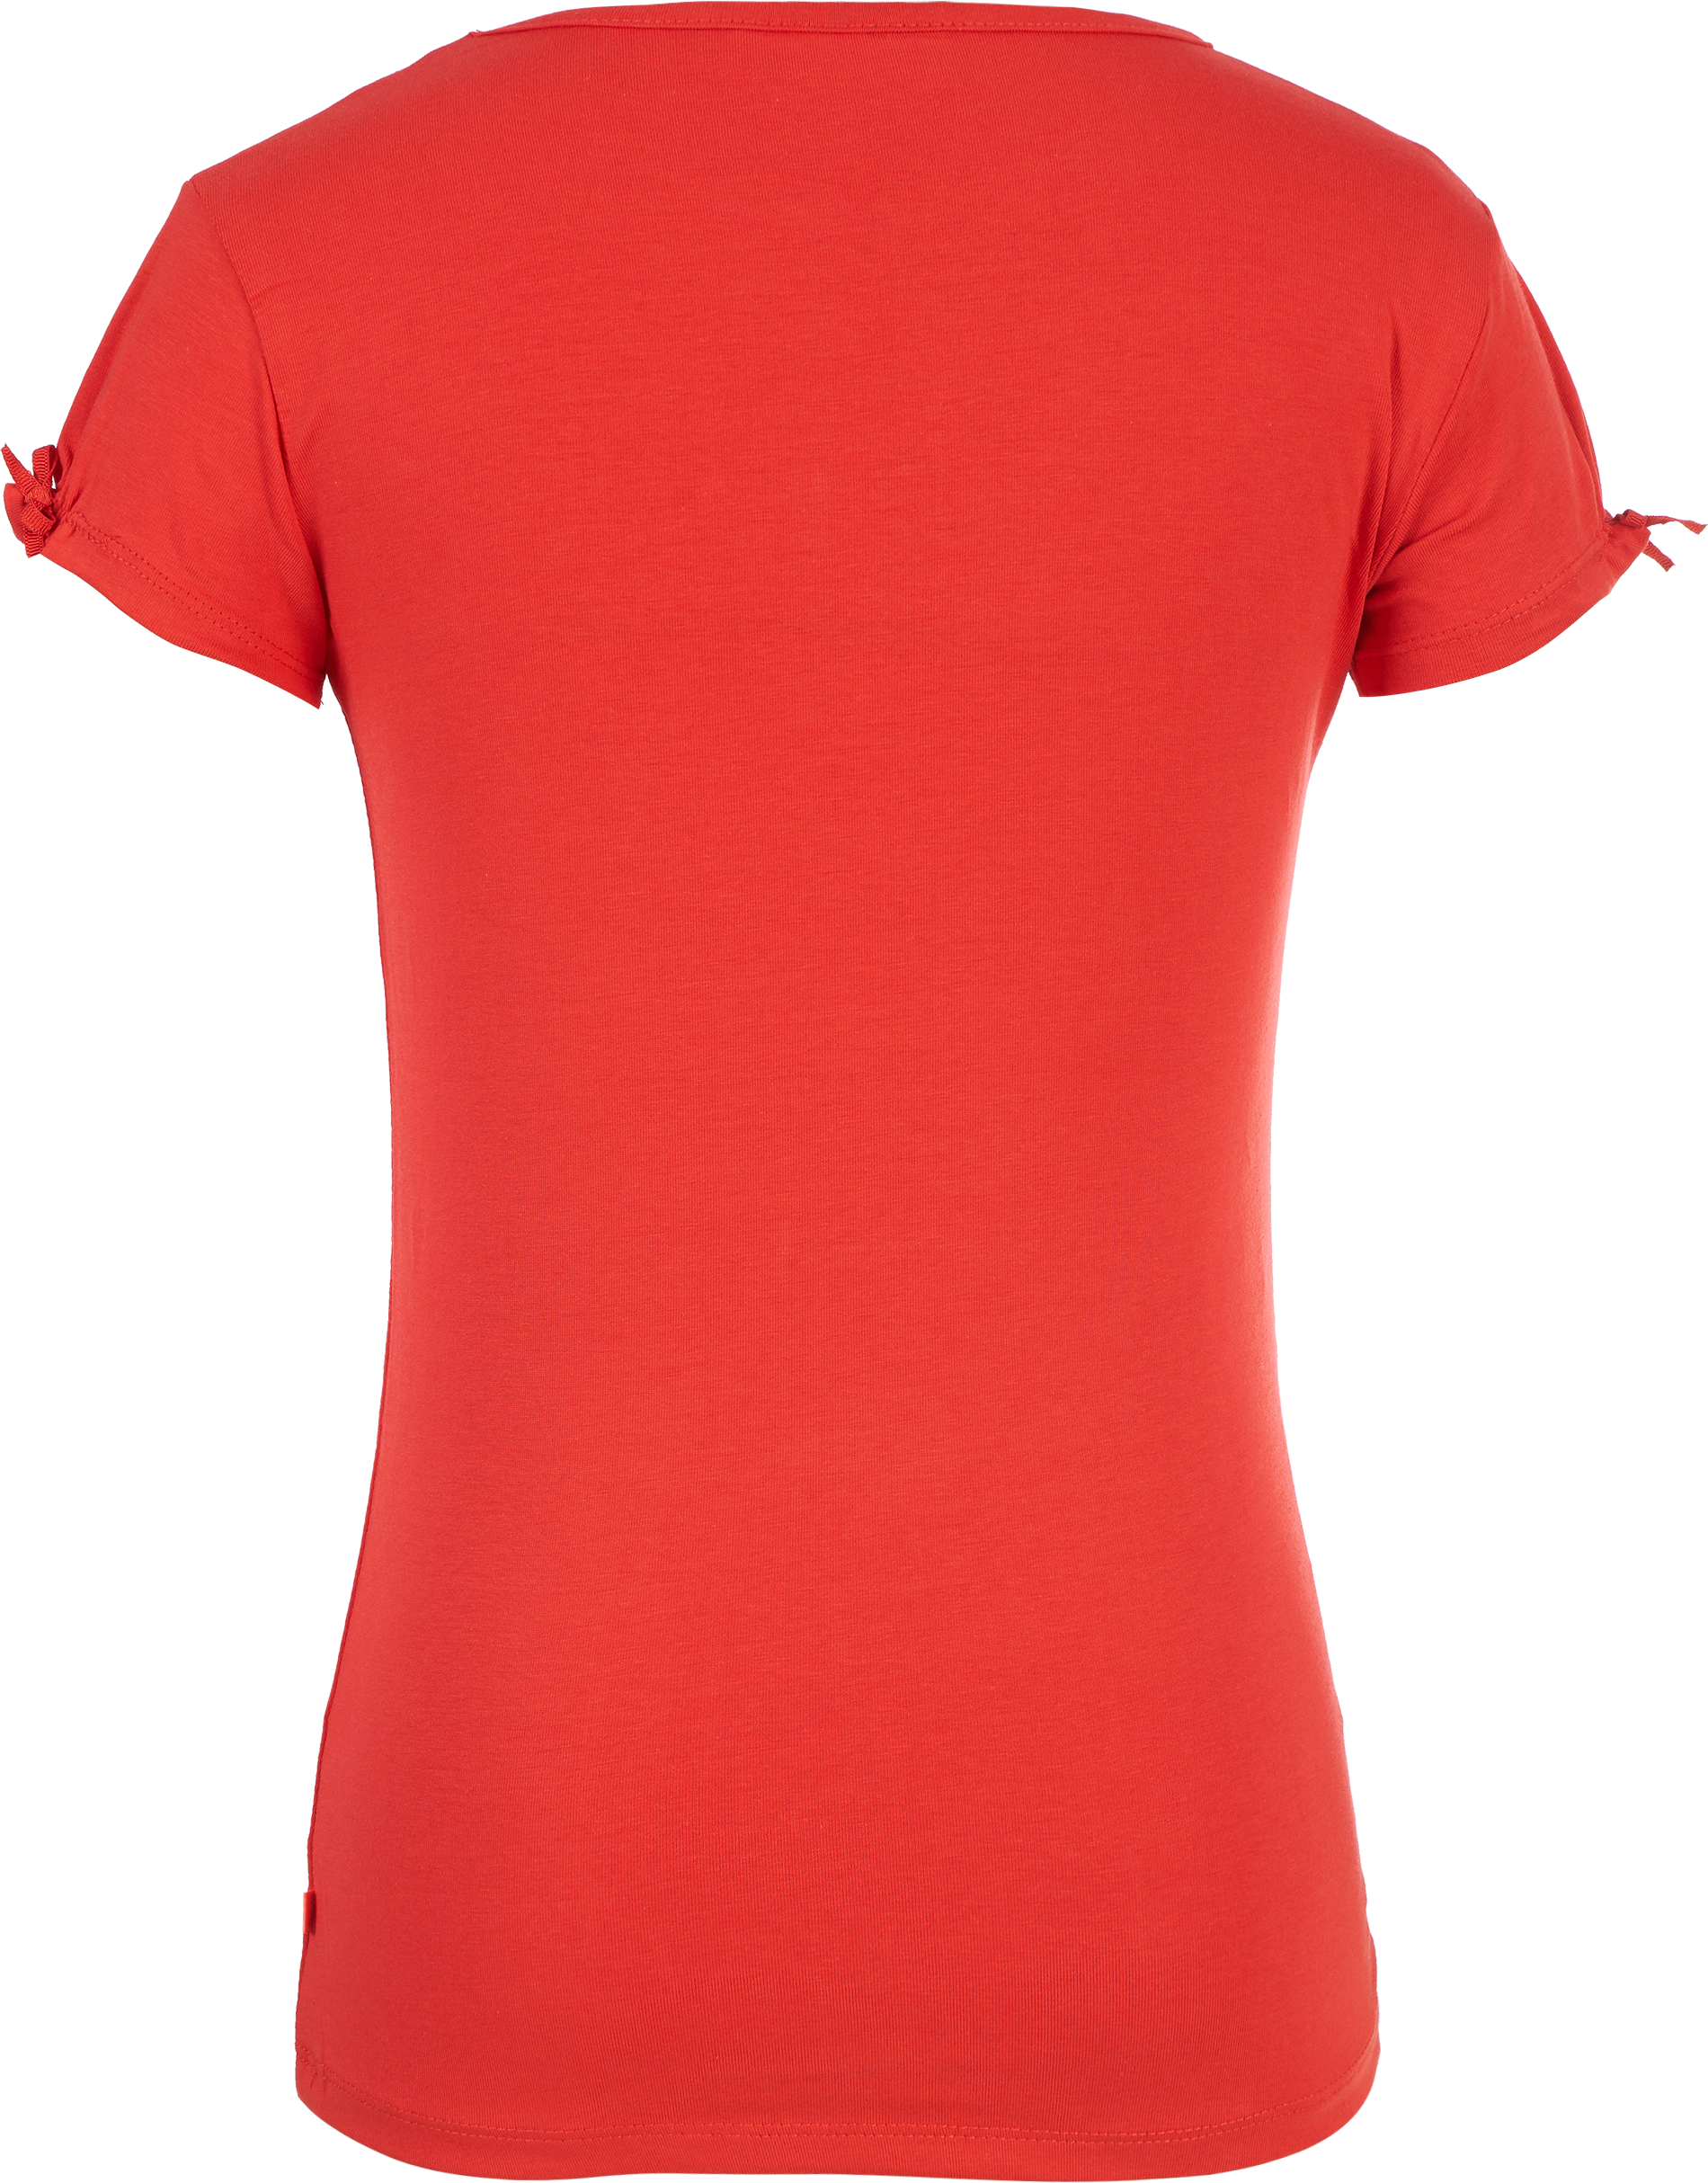 Meisjes T-shirt met poezen van Someone in de kleur RED in maat 140.